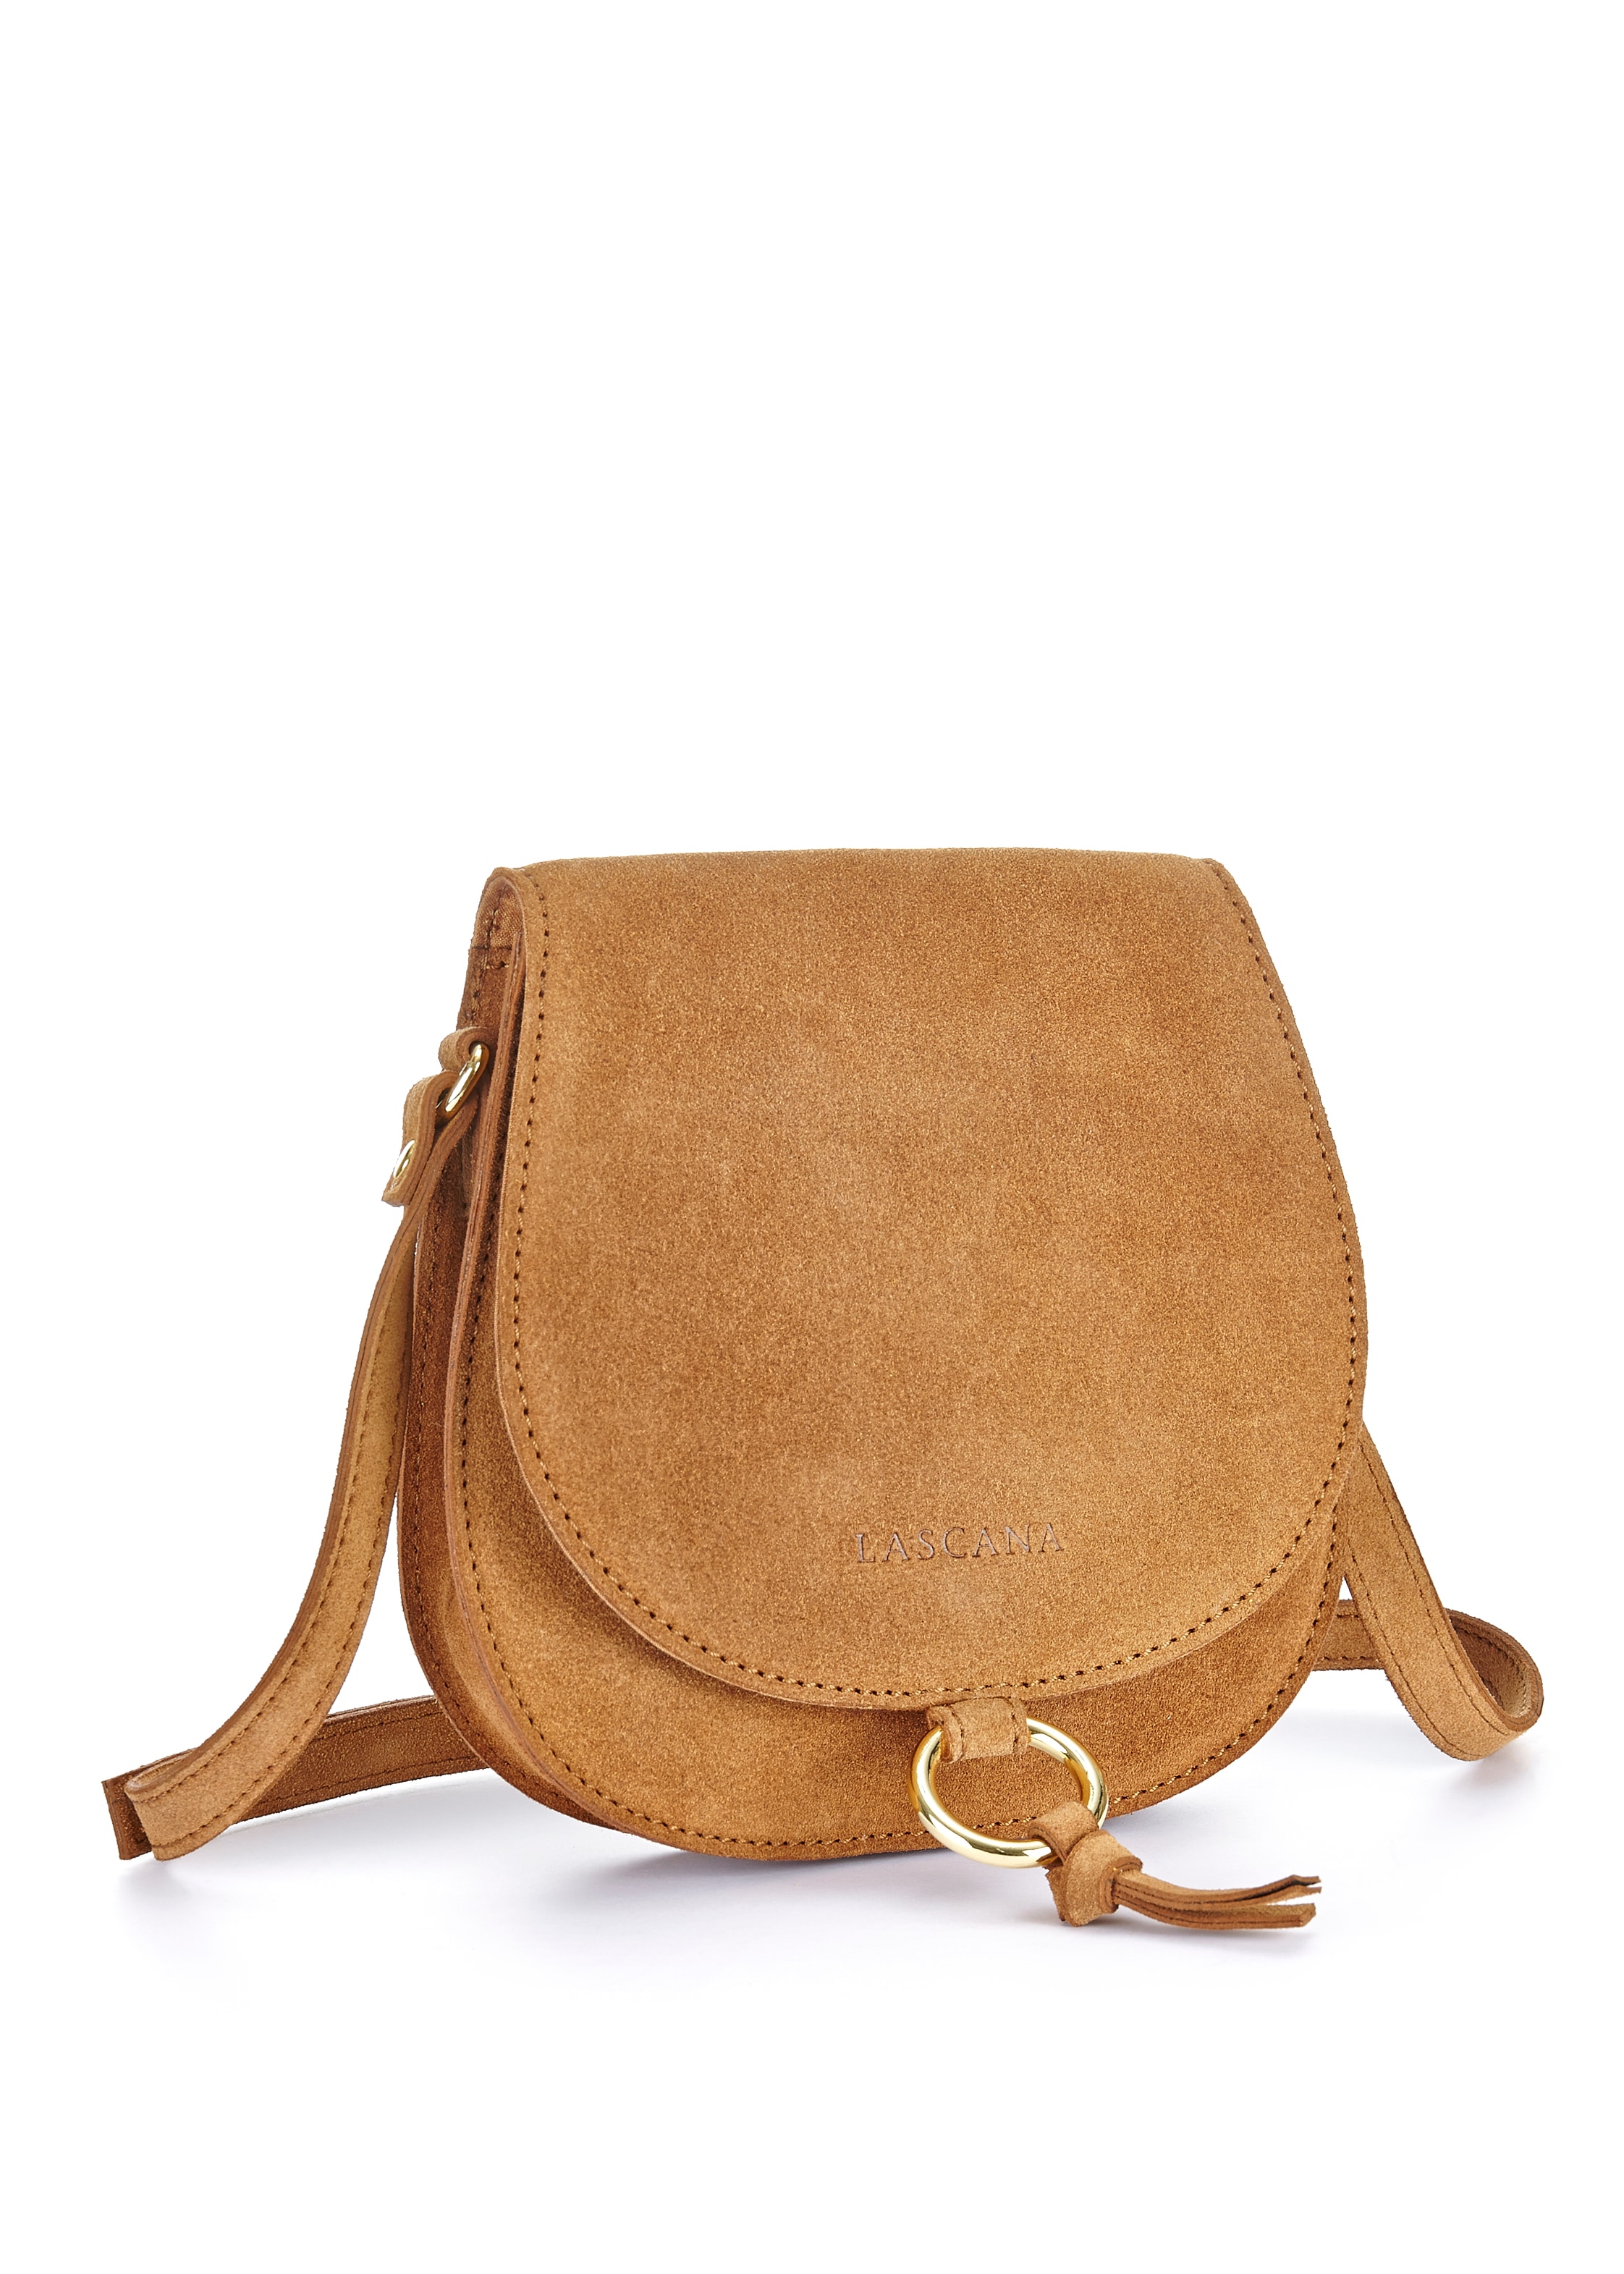 bestellen online Jelmoli-Versand aus Handtasche LASCANA im | Leder, Western-Look Umhängetasche, goldfarbenem Zierring mit